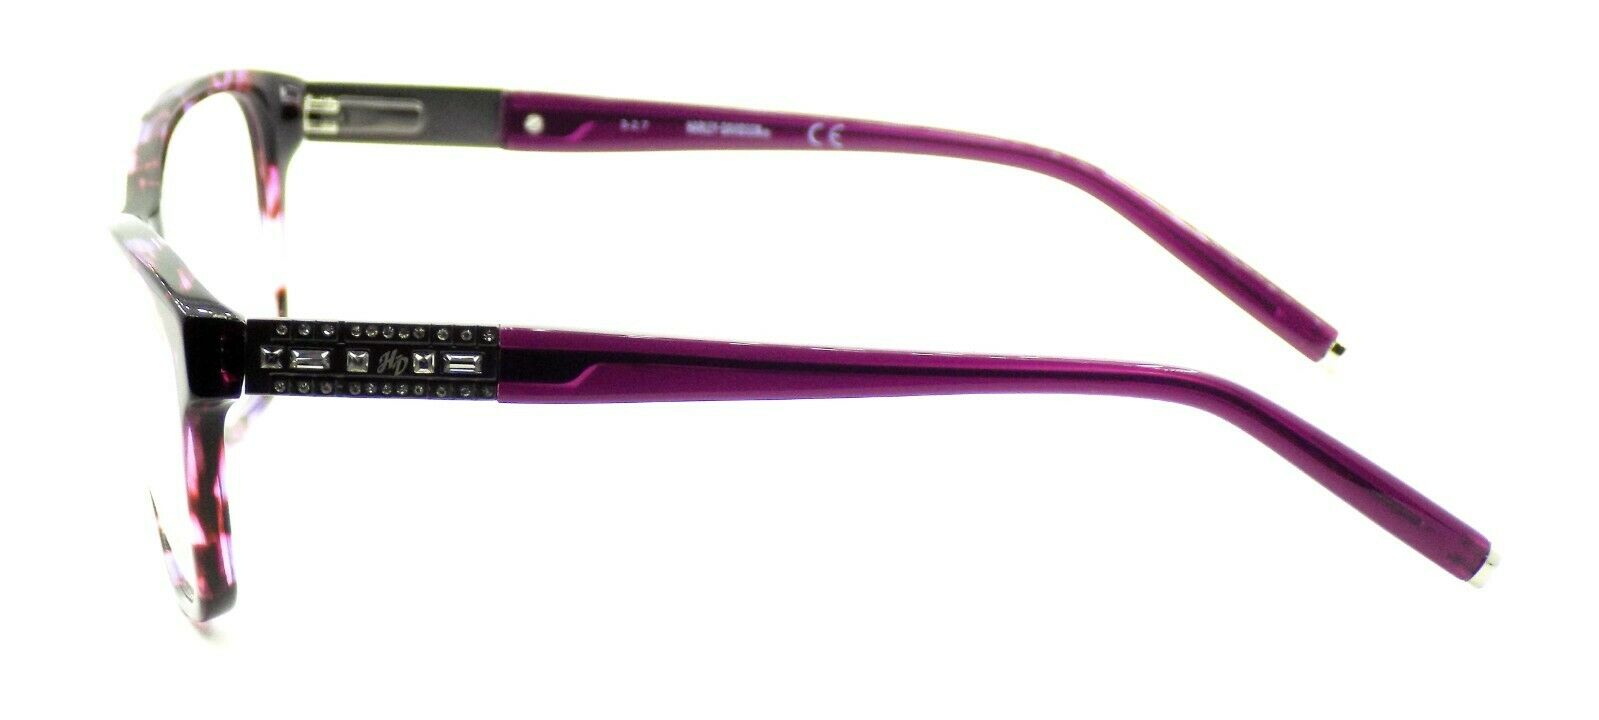 3-Harley Davidson HD0539 083 Women's Eyeglasses Frames 54-17-135 Violet / Crystals-664689891047-IKSpecs